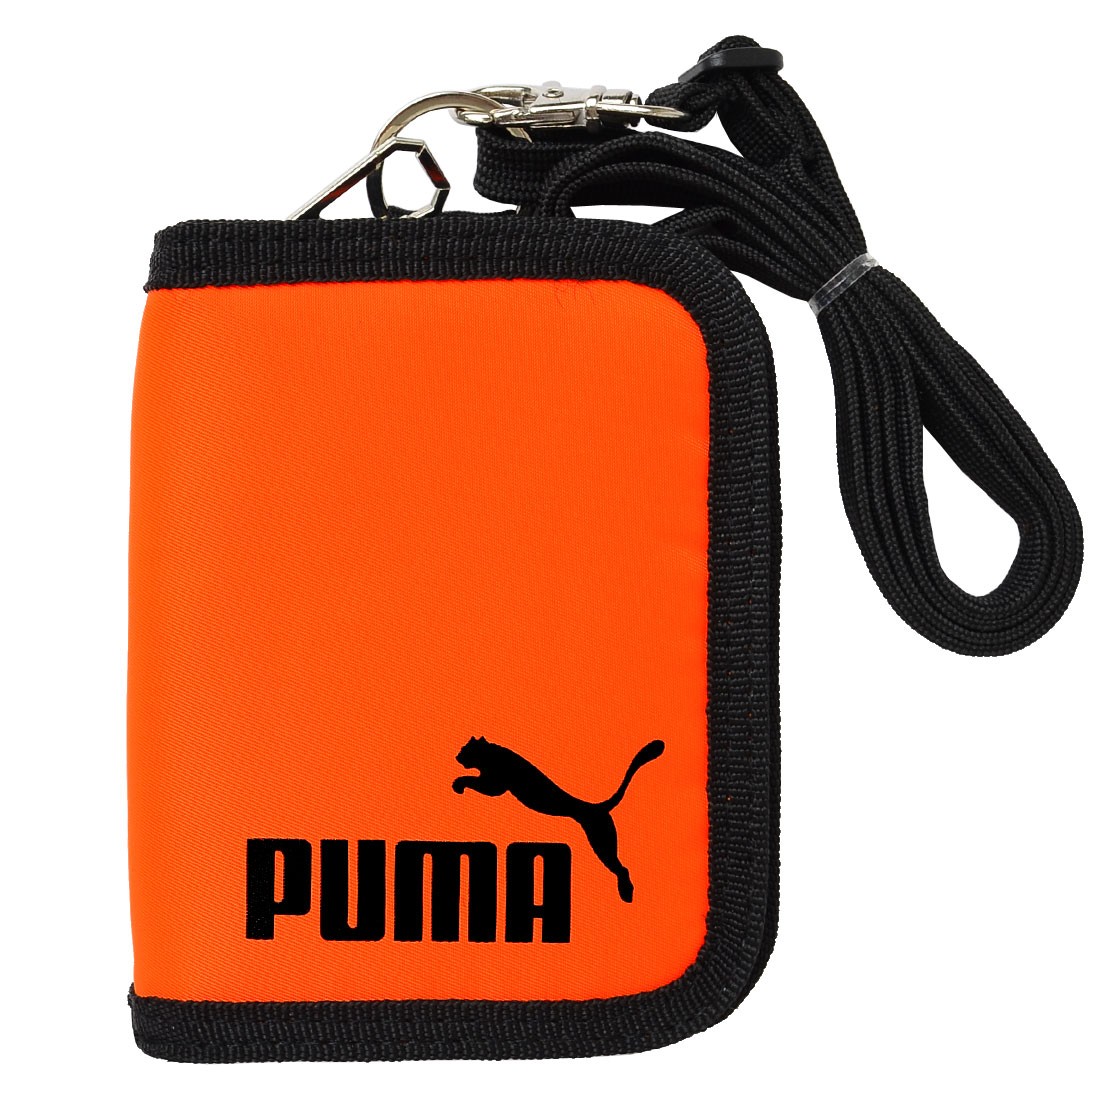 財布 PUMA プーマ 二つ折り財布 ストラップ付き 斜めがけ 紐付き PM242 小学生 バリバリ...